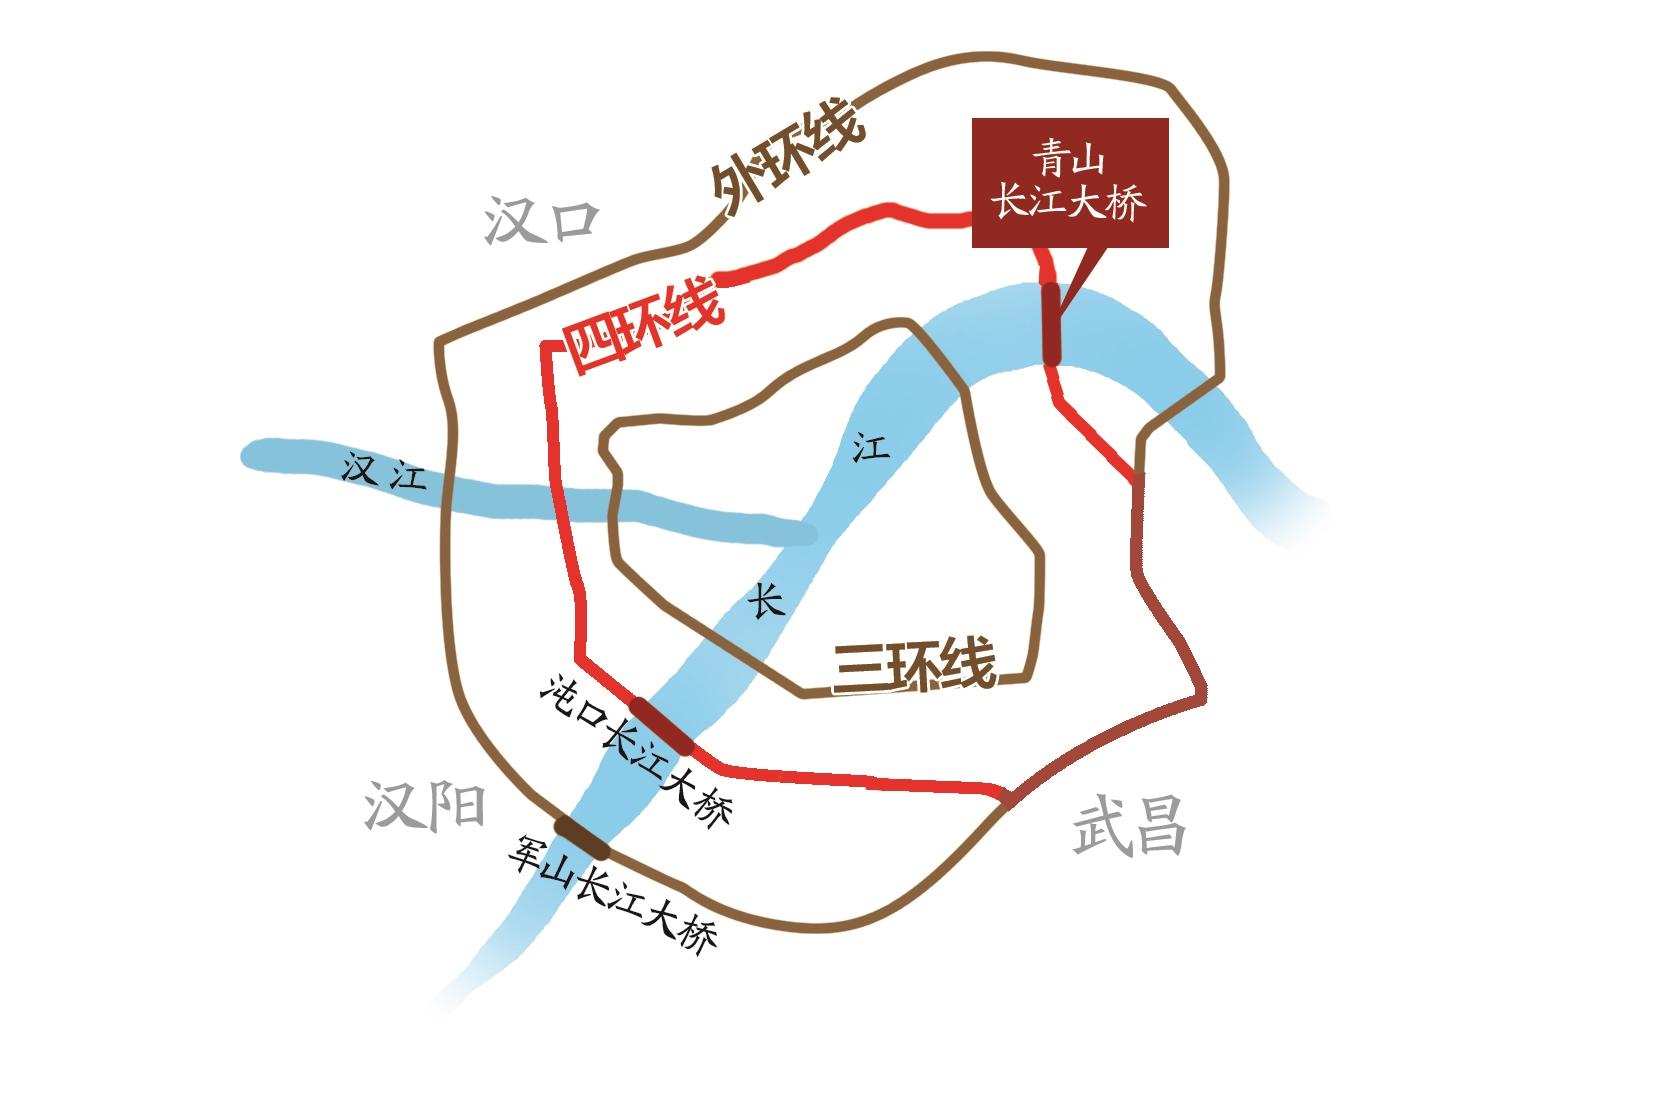 武汉四环线正式开通全线运营148公里长的四环画圆